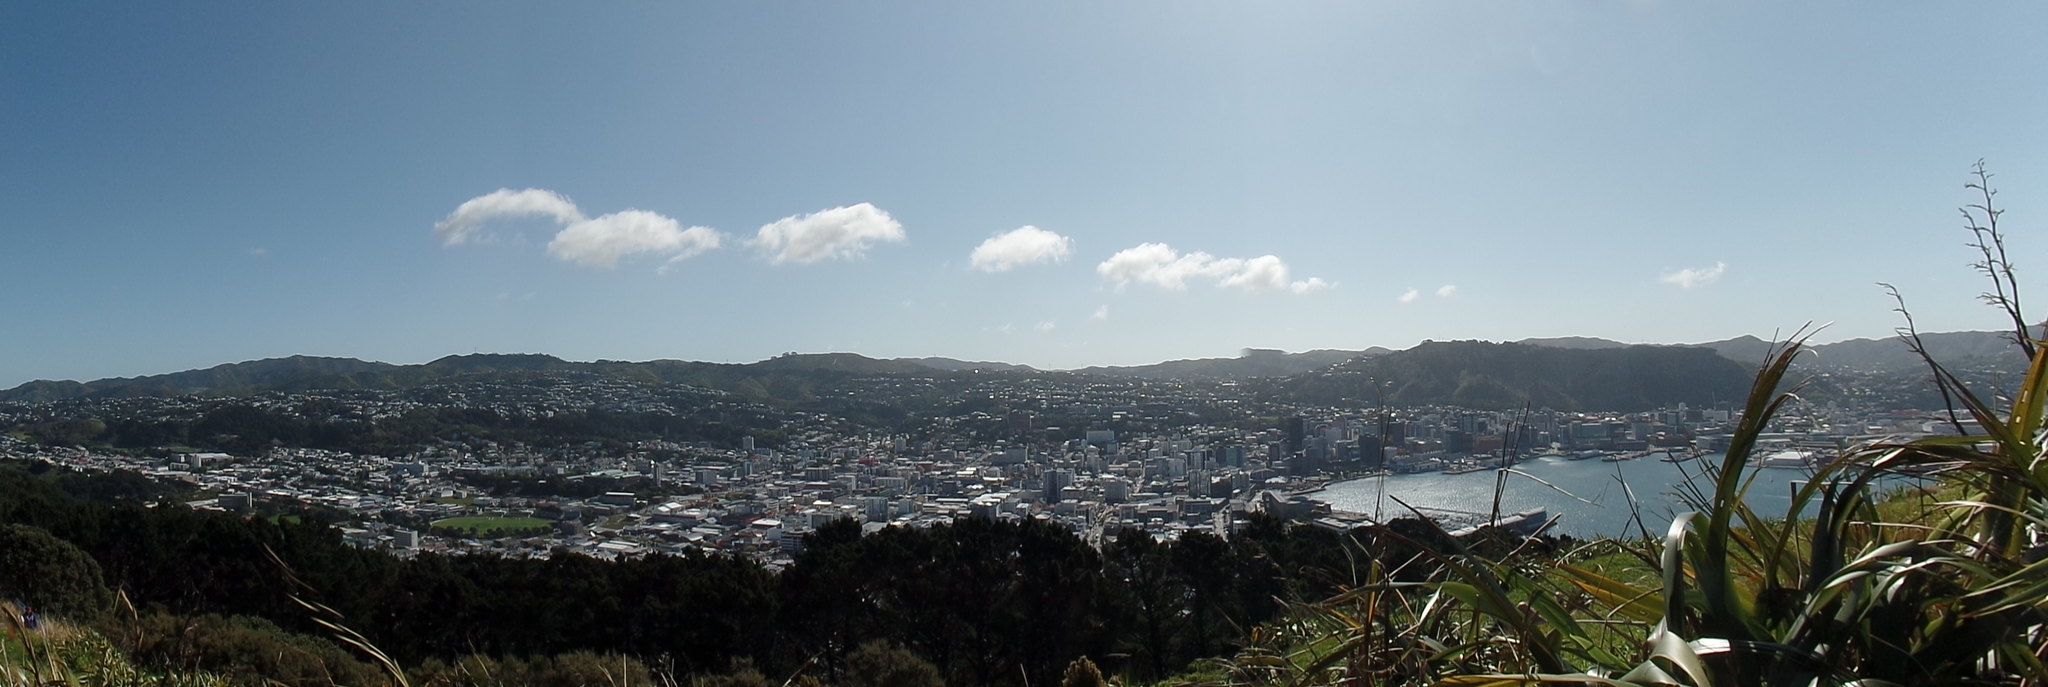 Día 11 - 10/10/15: Wellington: Mt. Victoria, Museo Te Papa y Cable Car - Nueva Zelanda, Aotearoa: El viaje de mi vida por la Tierra Media (41)